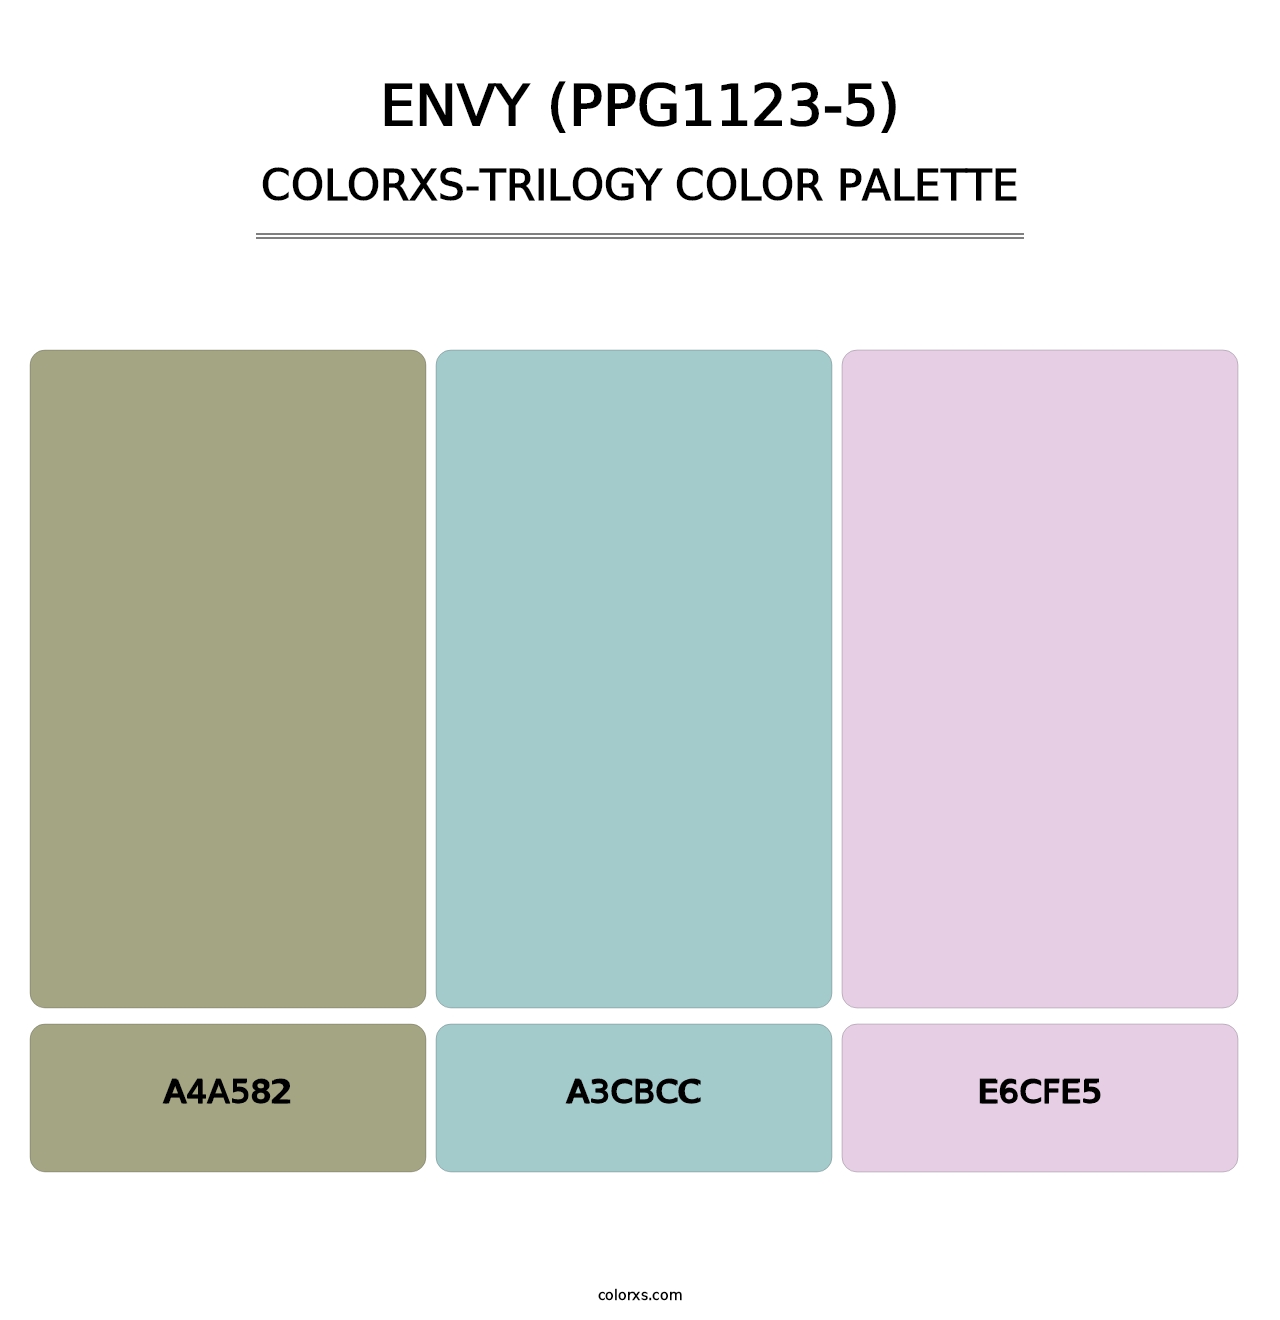 Envy (PPG1123-5) - Colorxs Trilogy Palette